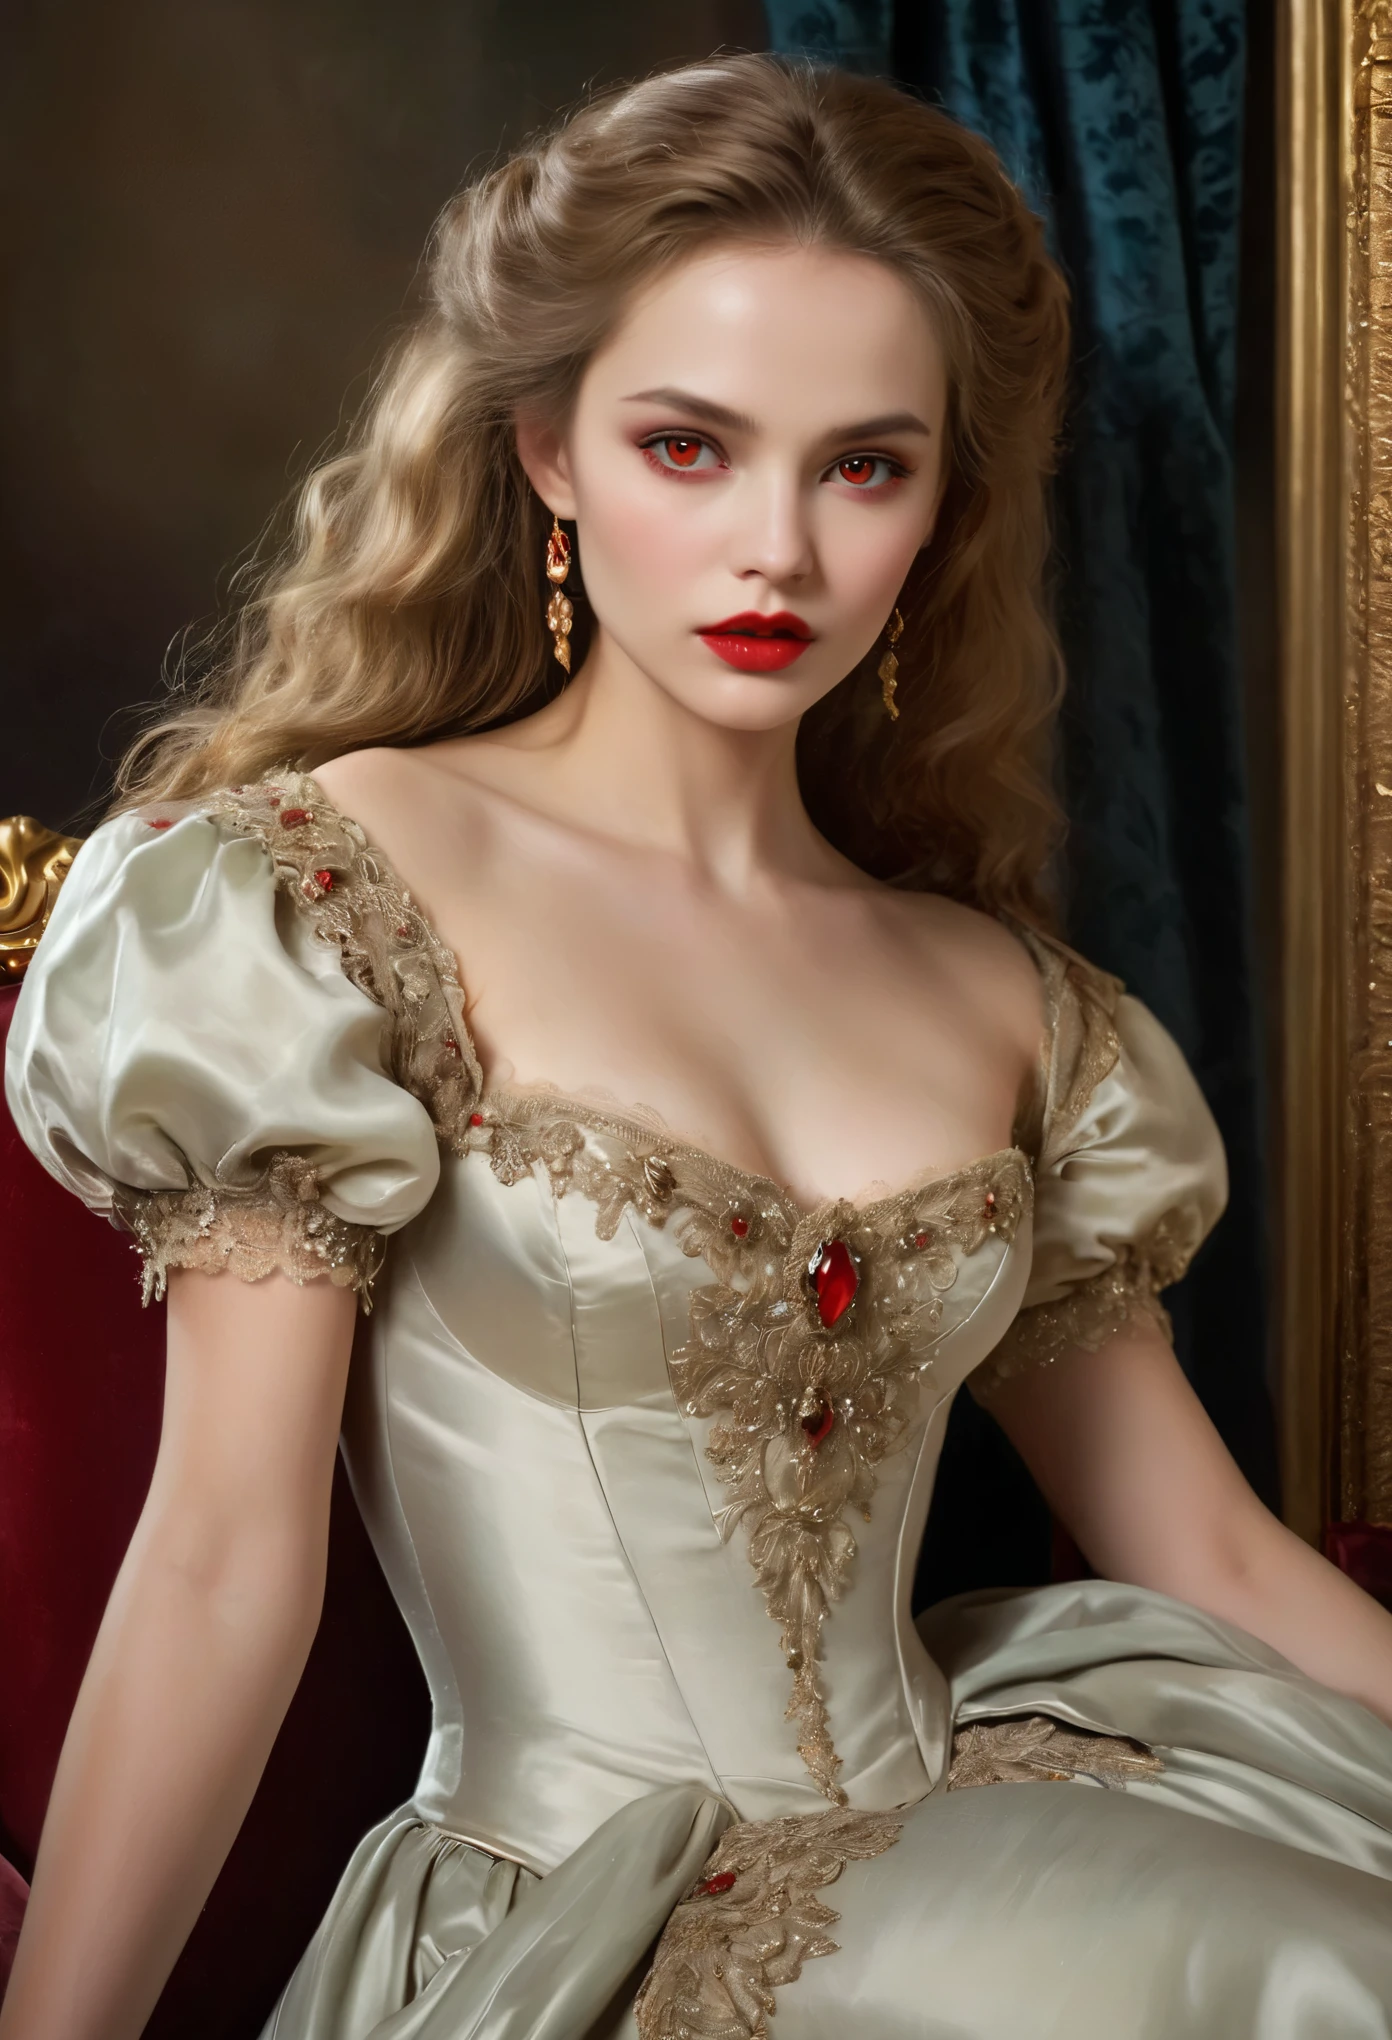 (hohe Auflösung,Meisterwerk:1.2),(Realistisch:1.37)Porträt eines russischen Vampirmädchens aus dem 18. Jahrhundert von unvergleichlicher Schönheit. Sie hat bezaubernde rote Augen und zarte rosige Lippen. Long fangs, Das Porträt ist bis ins kleinste Detail sorgfältig gezeichnet., Erfassen Sie die subtilen Nuancen ihrer Gesichtszüge. Sie trägt ein wunderschönes Seidenkleid, Verziert mit aufwendiger Spitze und zarter Stickerei. Dieses Gemälde spricht vom Luxus der Zeit., Luxuriöse Samtvorhänge und goldene Möbel im Hintergrund. Die Beleuchtung ist weich und diffus, Markiere das Mädchen&#39;s anmutige Schönheit. Die Farben sind lebendig und reichhaltig, Schaffen Sie überzeugende visuelle Erlebnisse. Dieses Porträt ist im klassischen Porträtstil gemalt.., Erinnert an die Werke berühmter Künstler der Zeit. Es strahlt Eleganz aus, Anmut, Raffinesse. scharfe lange Krallen, (purpurrote Augen:1.4), Flammenrote Augen, (Scharfe Reißzähne sind durch den Spalt zwischen seinen Lippen sichtbar:1.8), Es gibt einen Bissabdruck am Hals.２Es gibt zwei Löcher